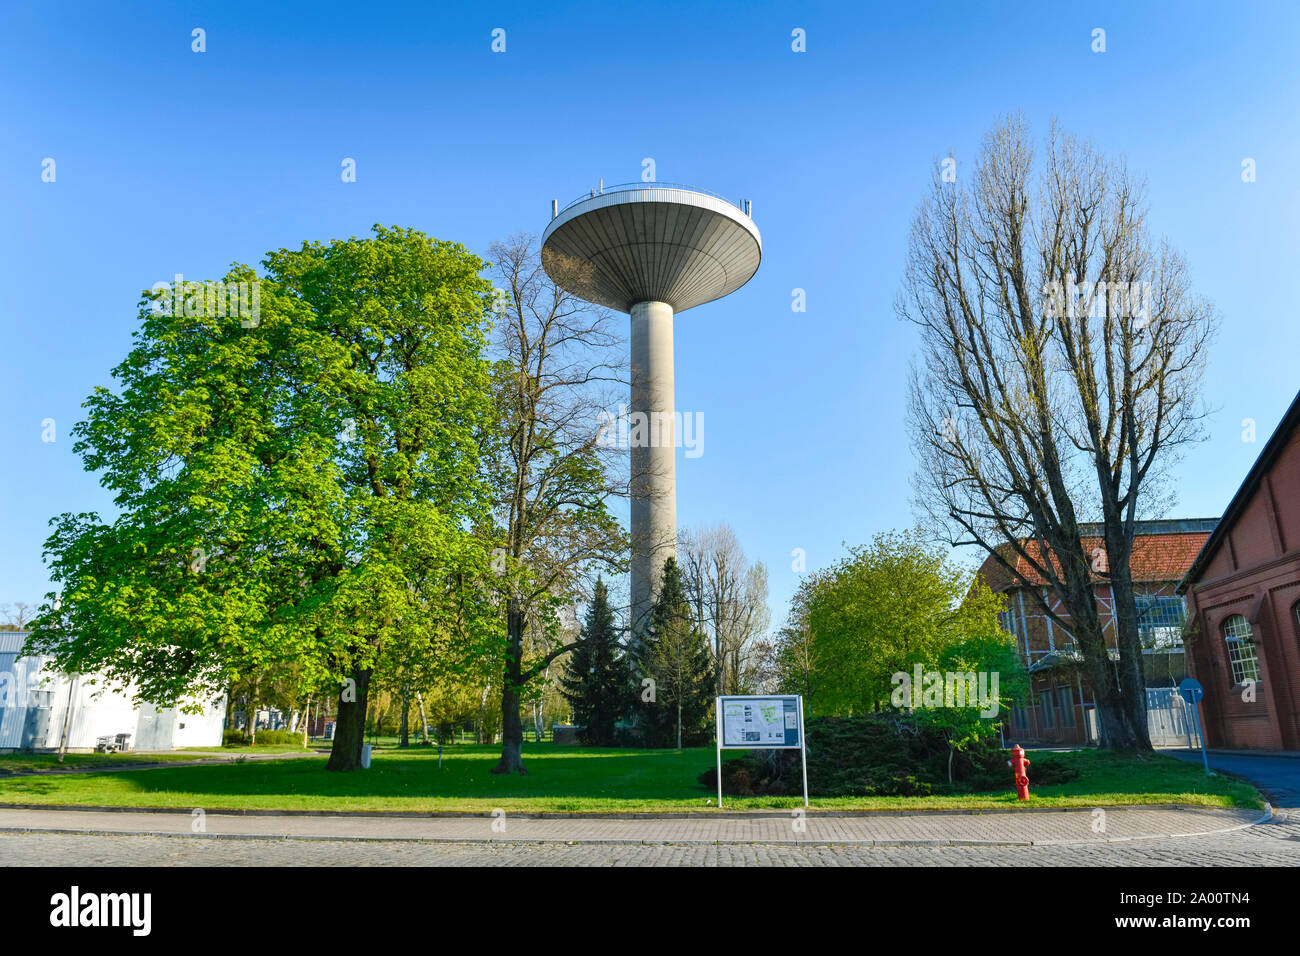 Neuer Wasserturm, Marienpark, Lankwitzer Strasse, Mariendorf, Tempelhof-Schoeneberg, Berlin, Deutschland Stock Photo